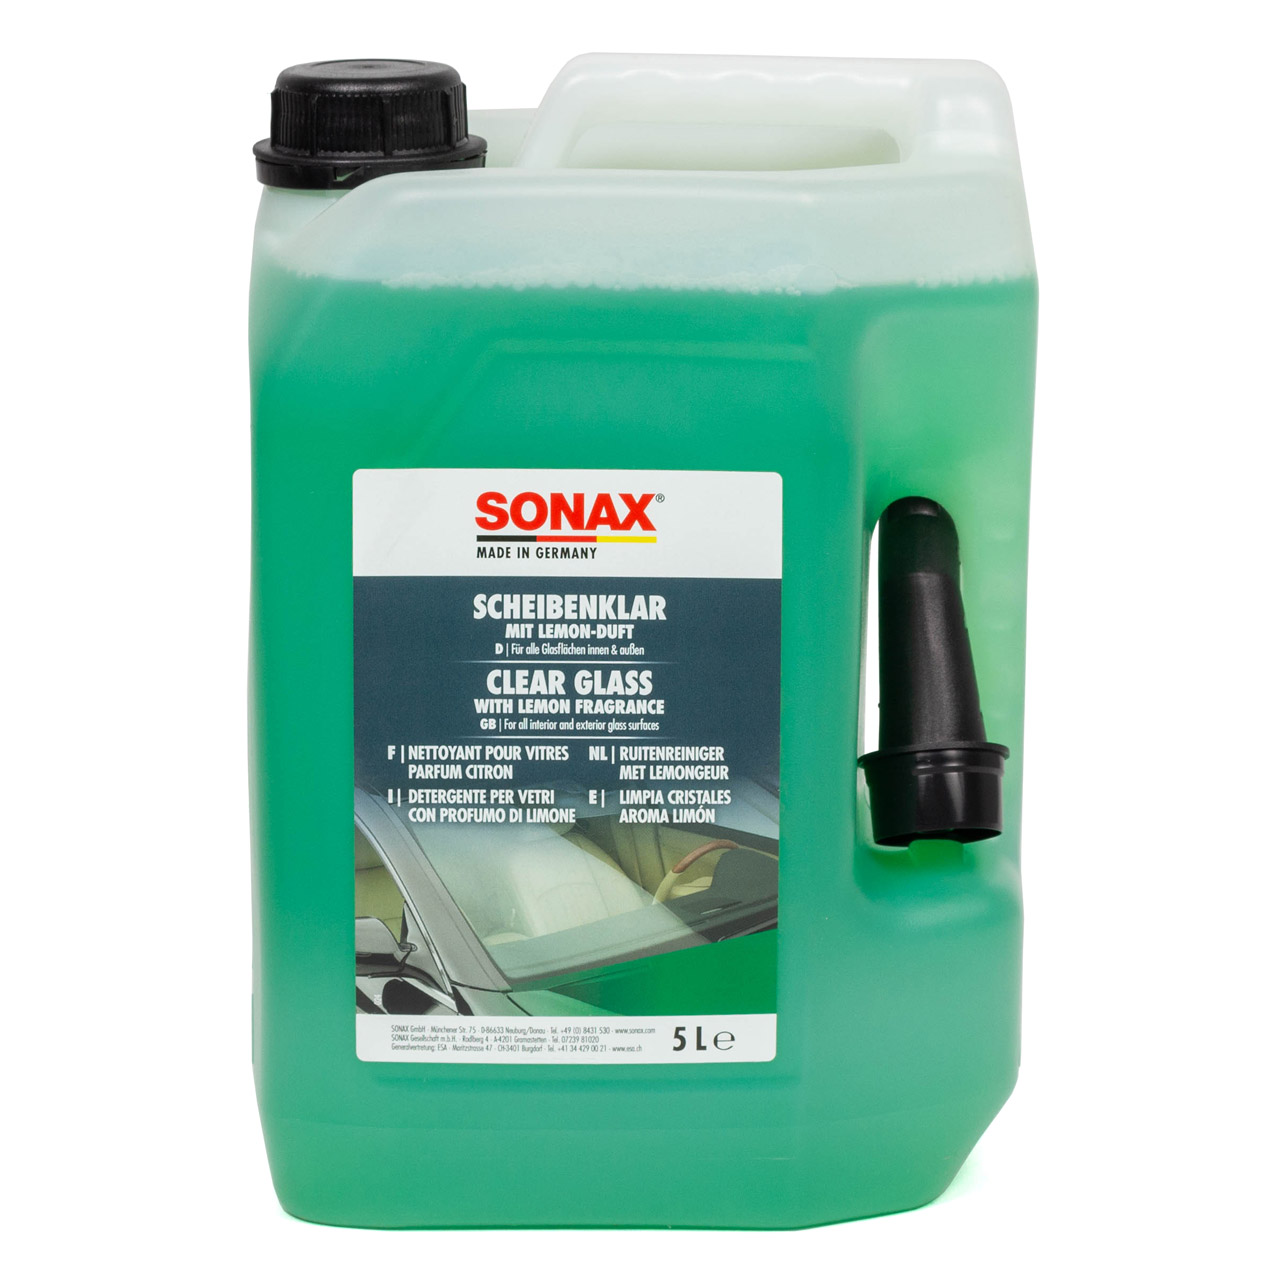 SONAX 338505 Scheibenreiniger Scheibenklar Glasreiniger Reiniger 5 Liter